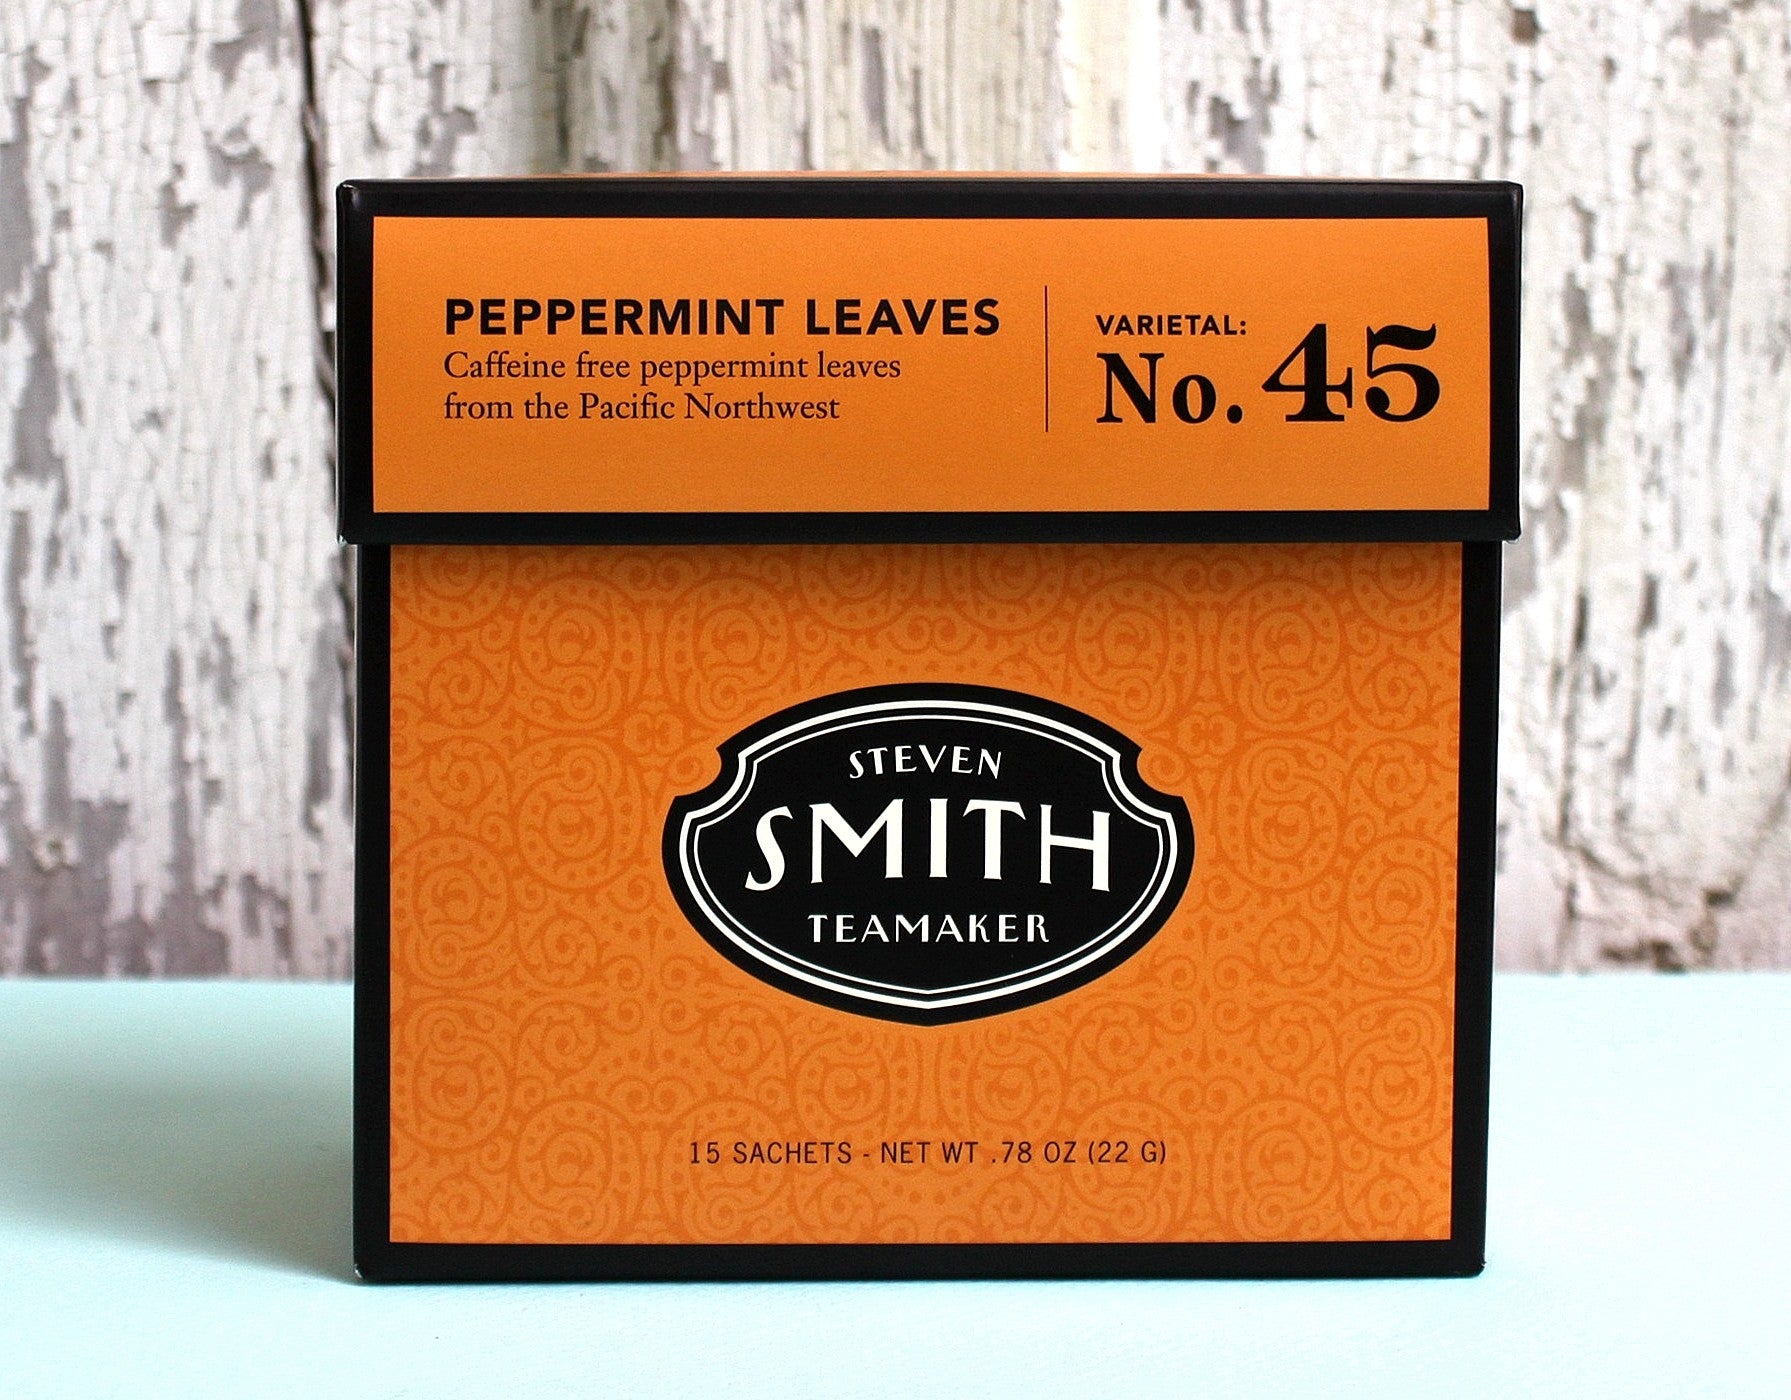 Steven Smith Teamaker Peppermint Leaves